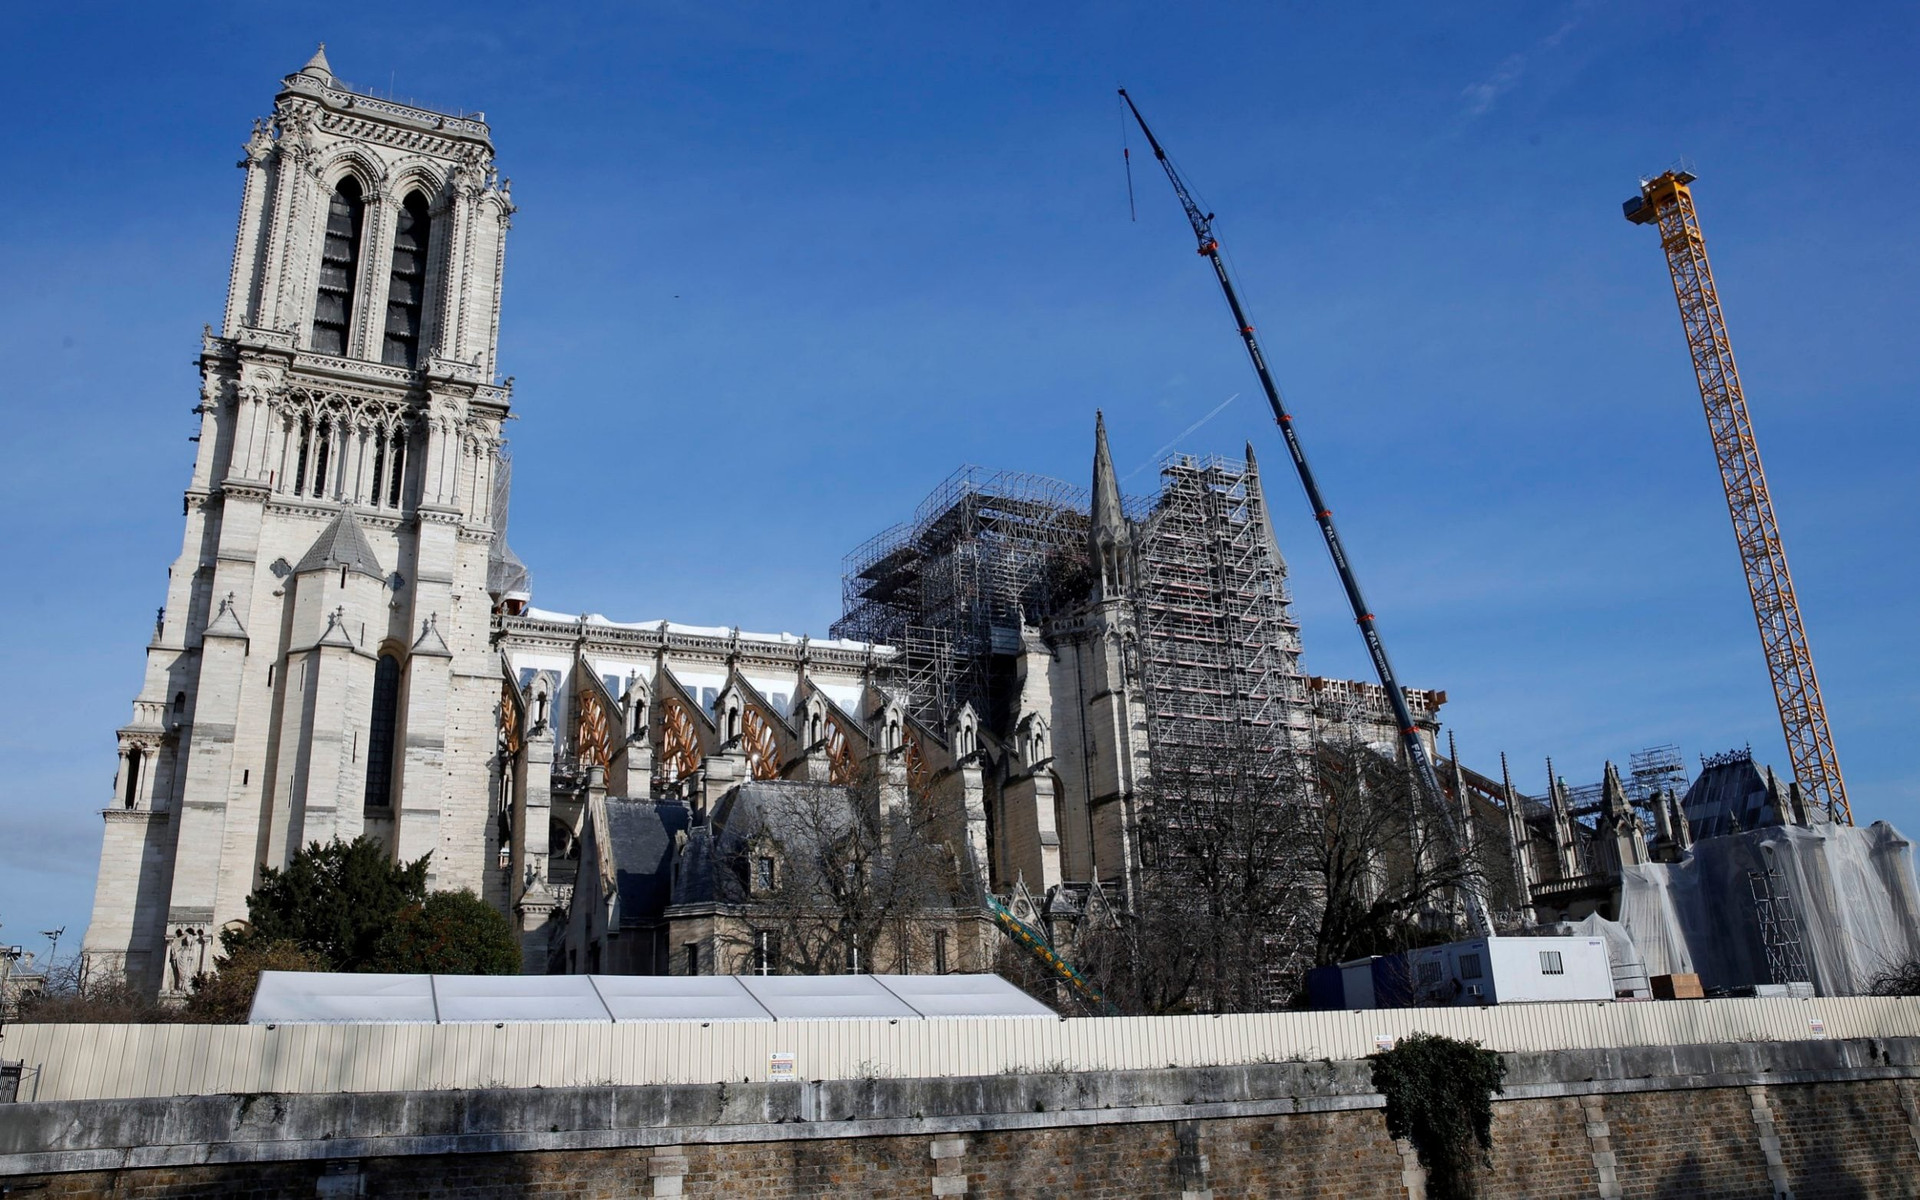 Chuyên gia đánh giá việc tu sửa biến nhà thờ Đức Bà Paris thành công viên - 2